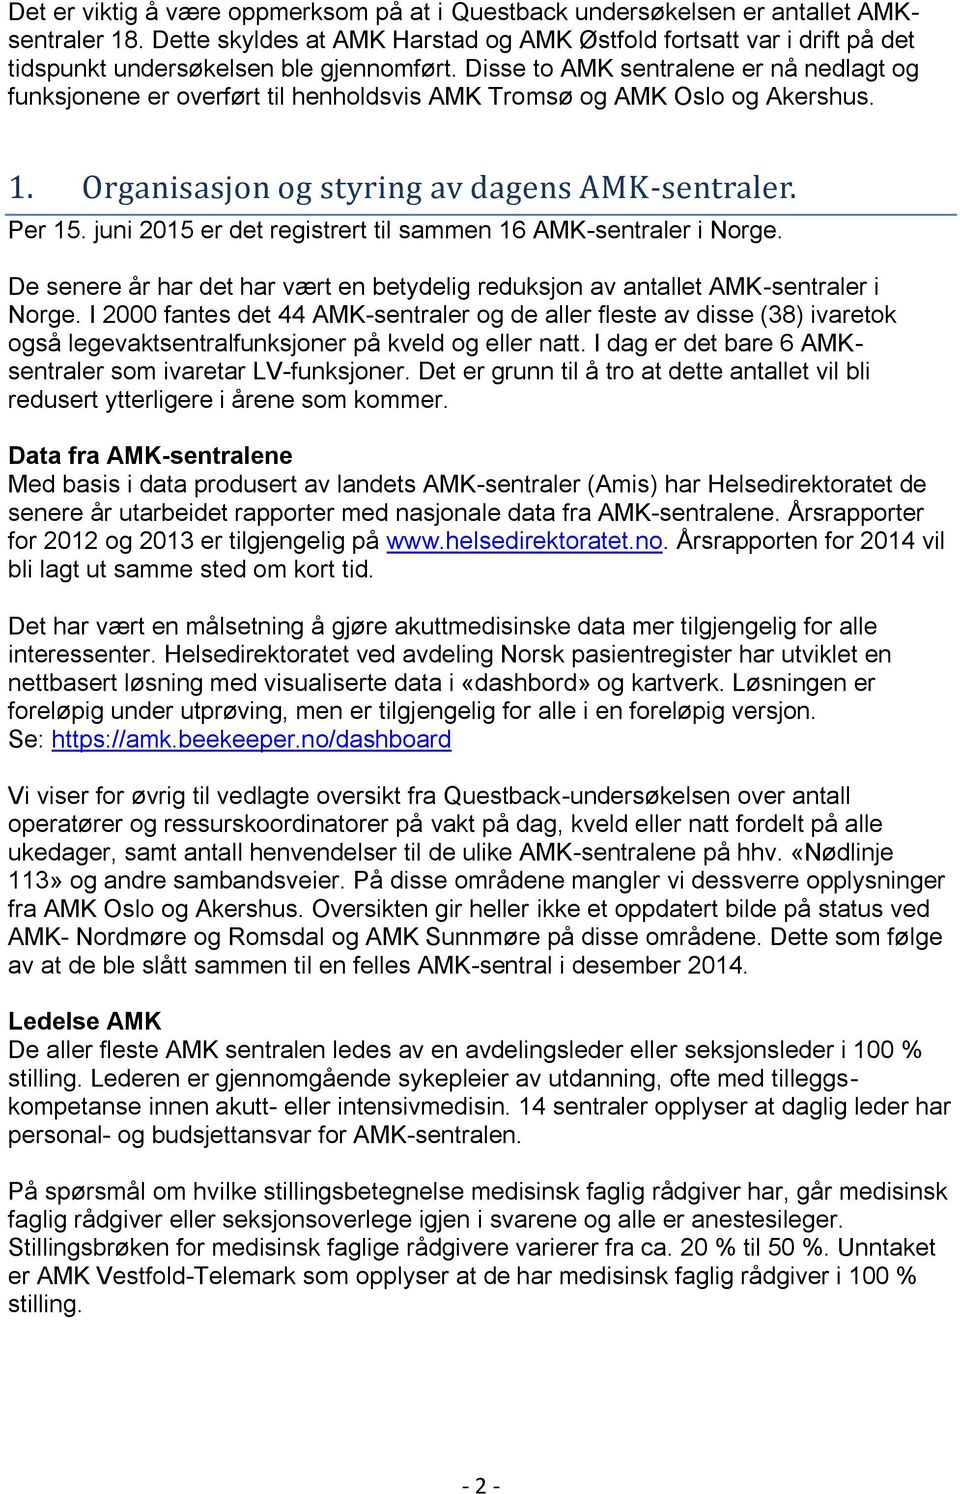 Disse to AMK sentralene er nå nedlagt og funksjonene er overført til henholdsvis AMK Tromsø og AMK Oslo og Akershus. 1. Organisasjon og styring av dagens AMK-sentraler. Per 15.